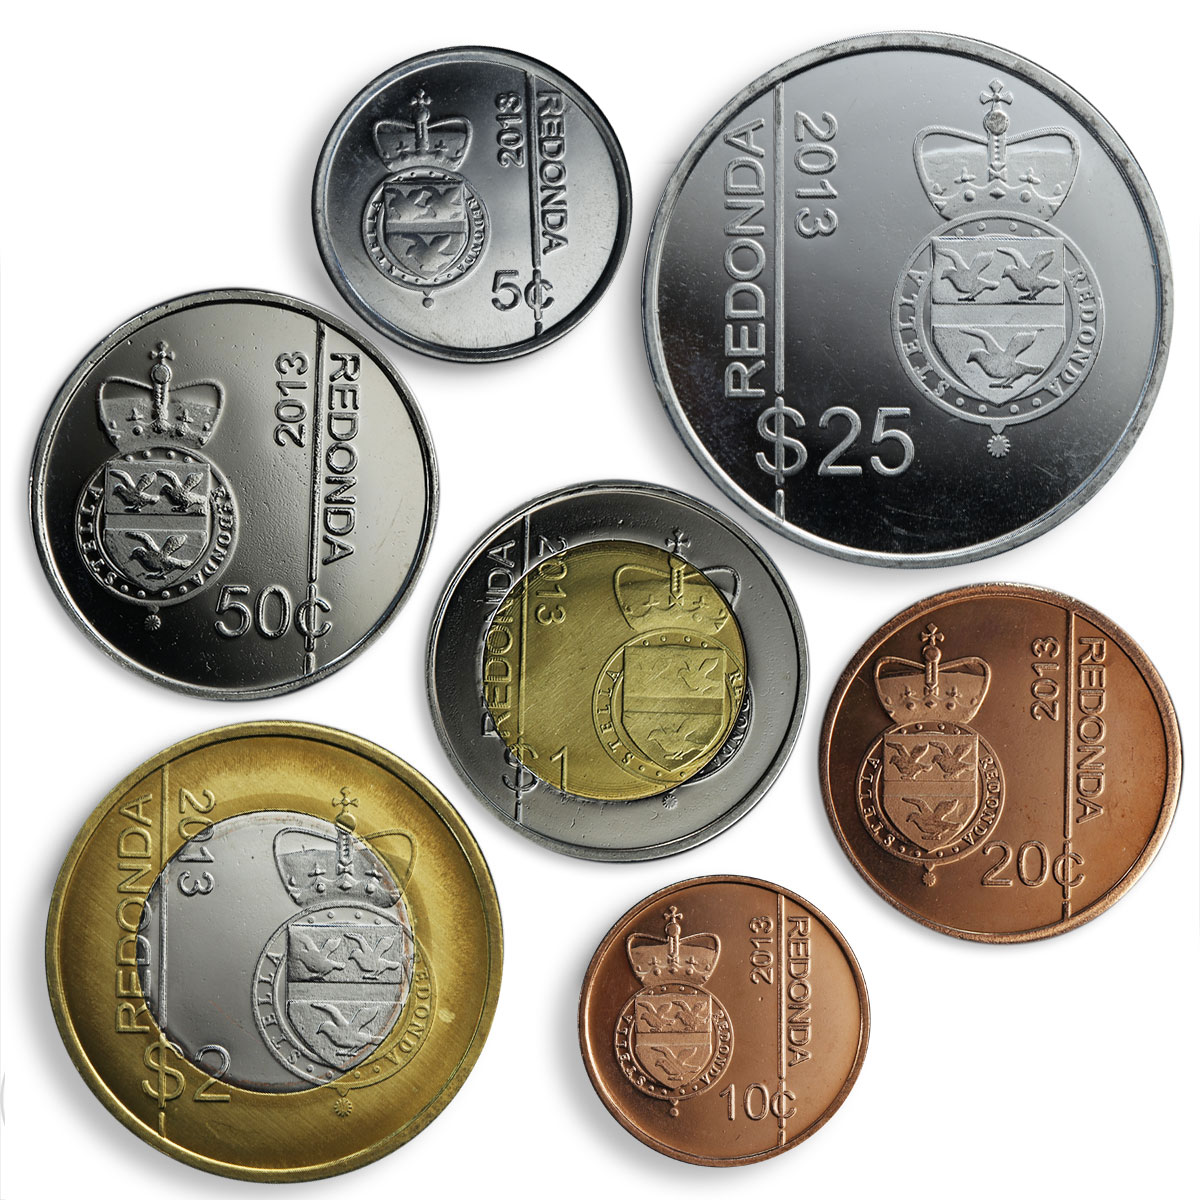 Redonda, set of 7 coins, Thatcher, Iron Lady 2013